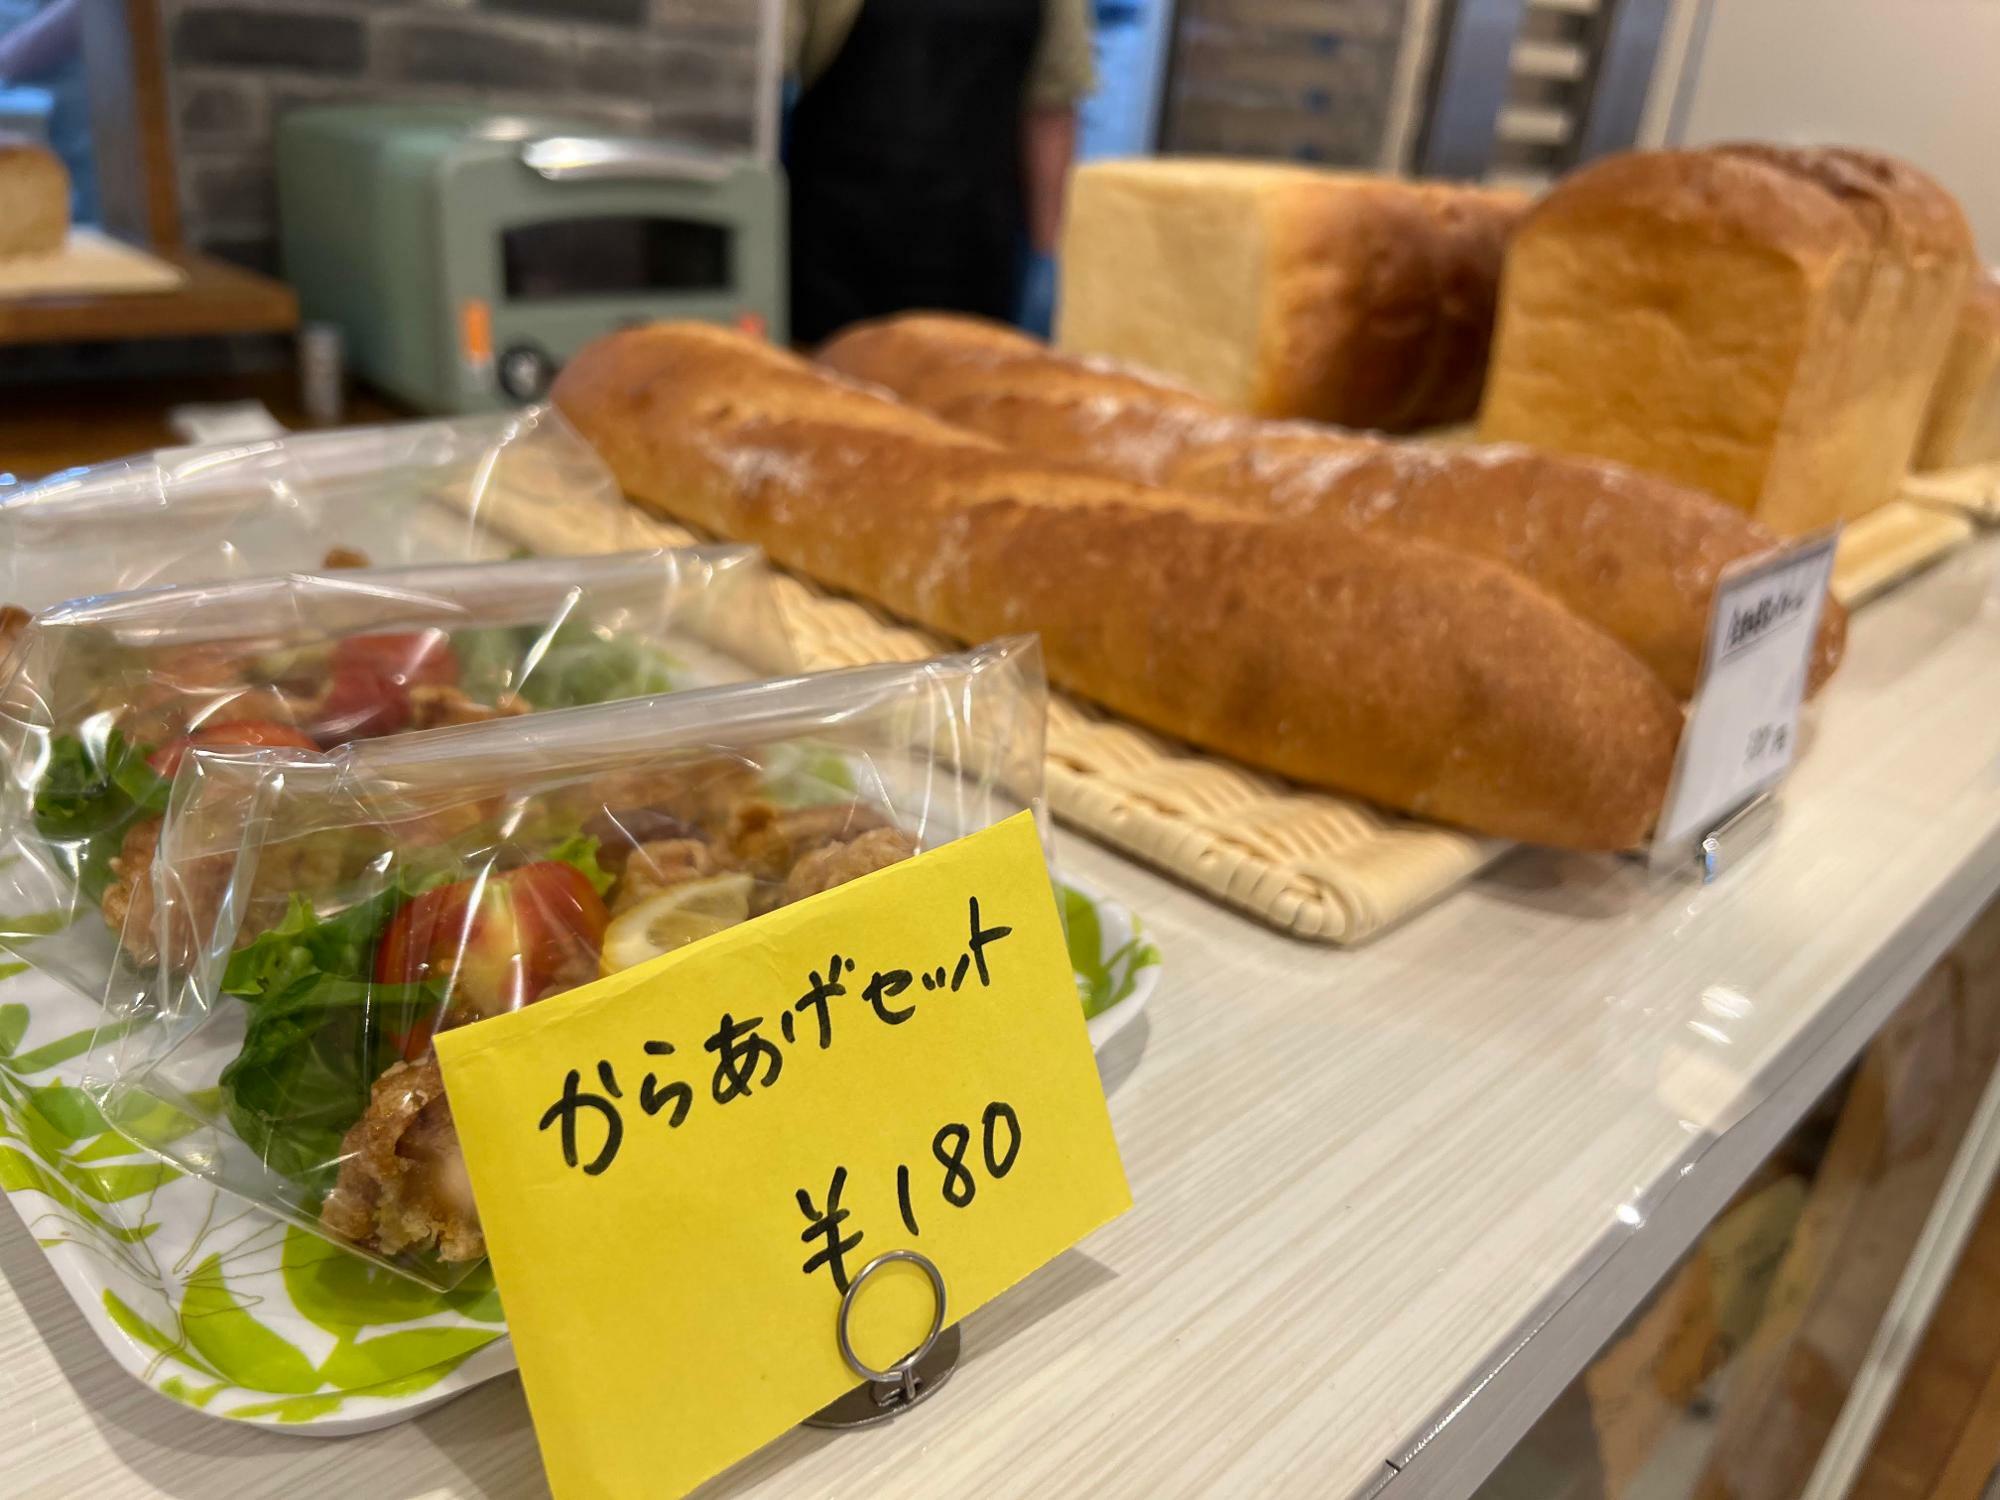 どんなパンが出品なのかはまだわかりません、これは普段のSHIROMARUさんのからあげセット